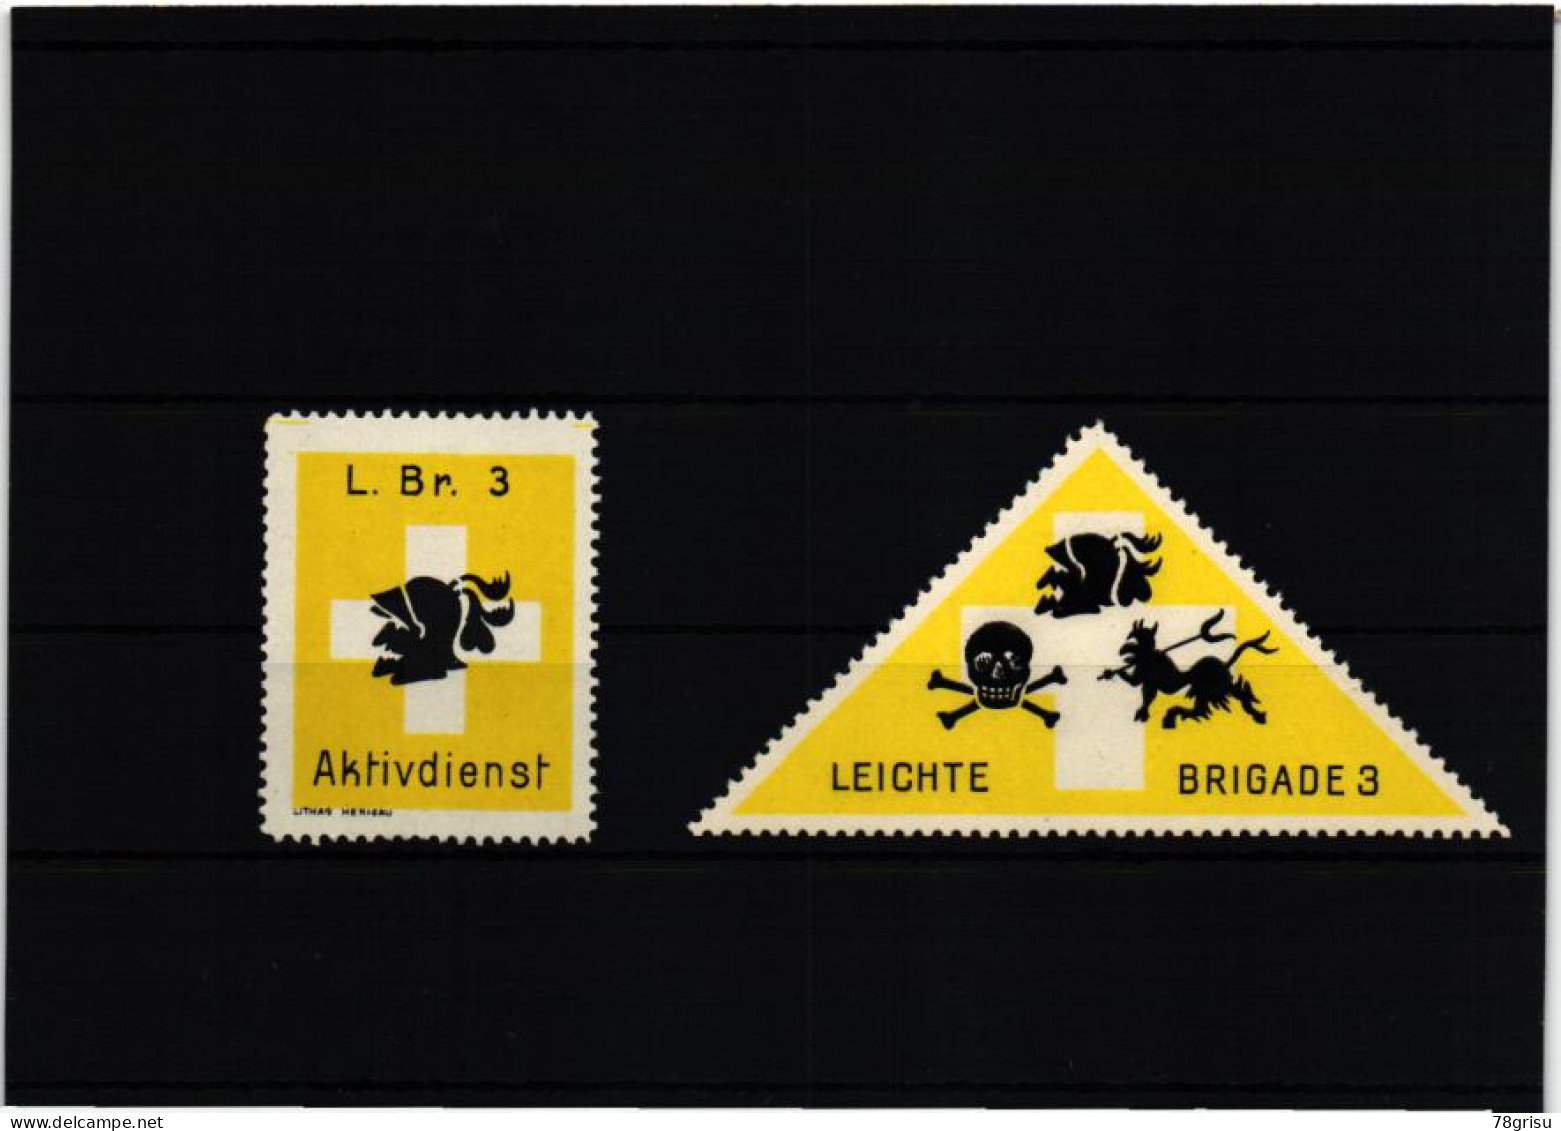 Schweiz Soldatenmarken, LEICHTE BRIGADE 3 L.BR. AKTIVDIENST 1939 1940 - Vignetten